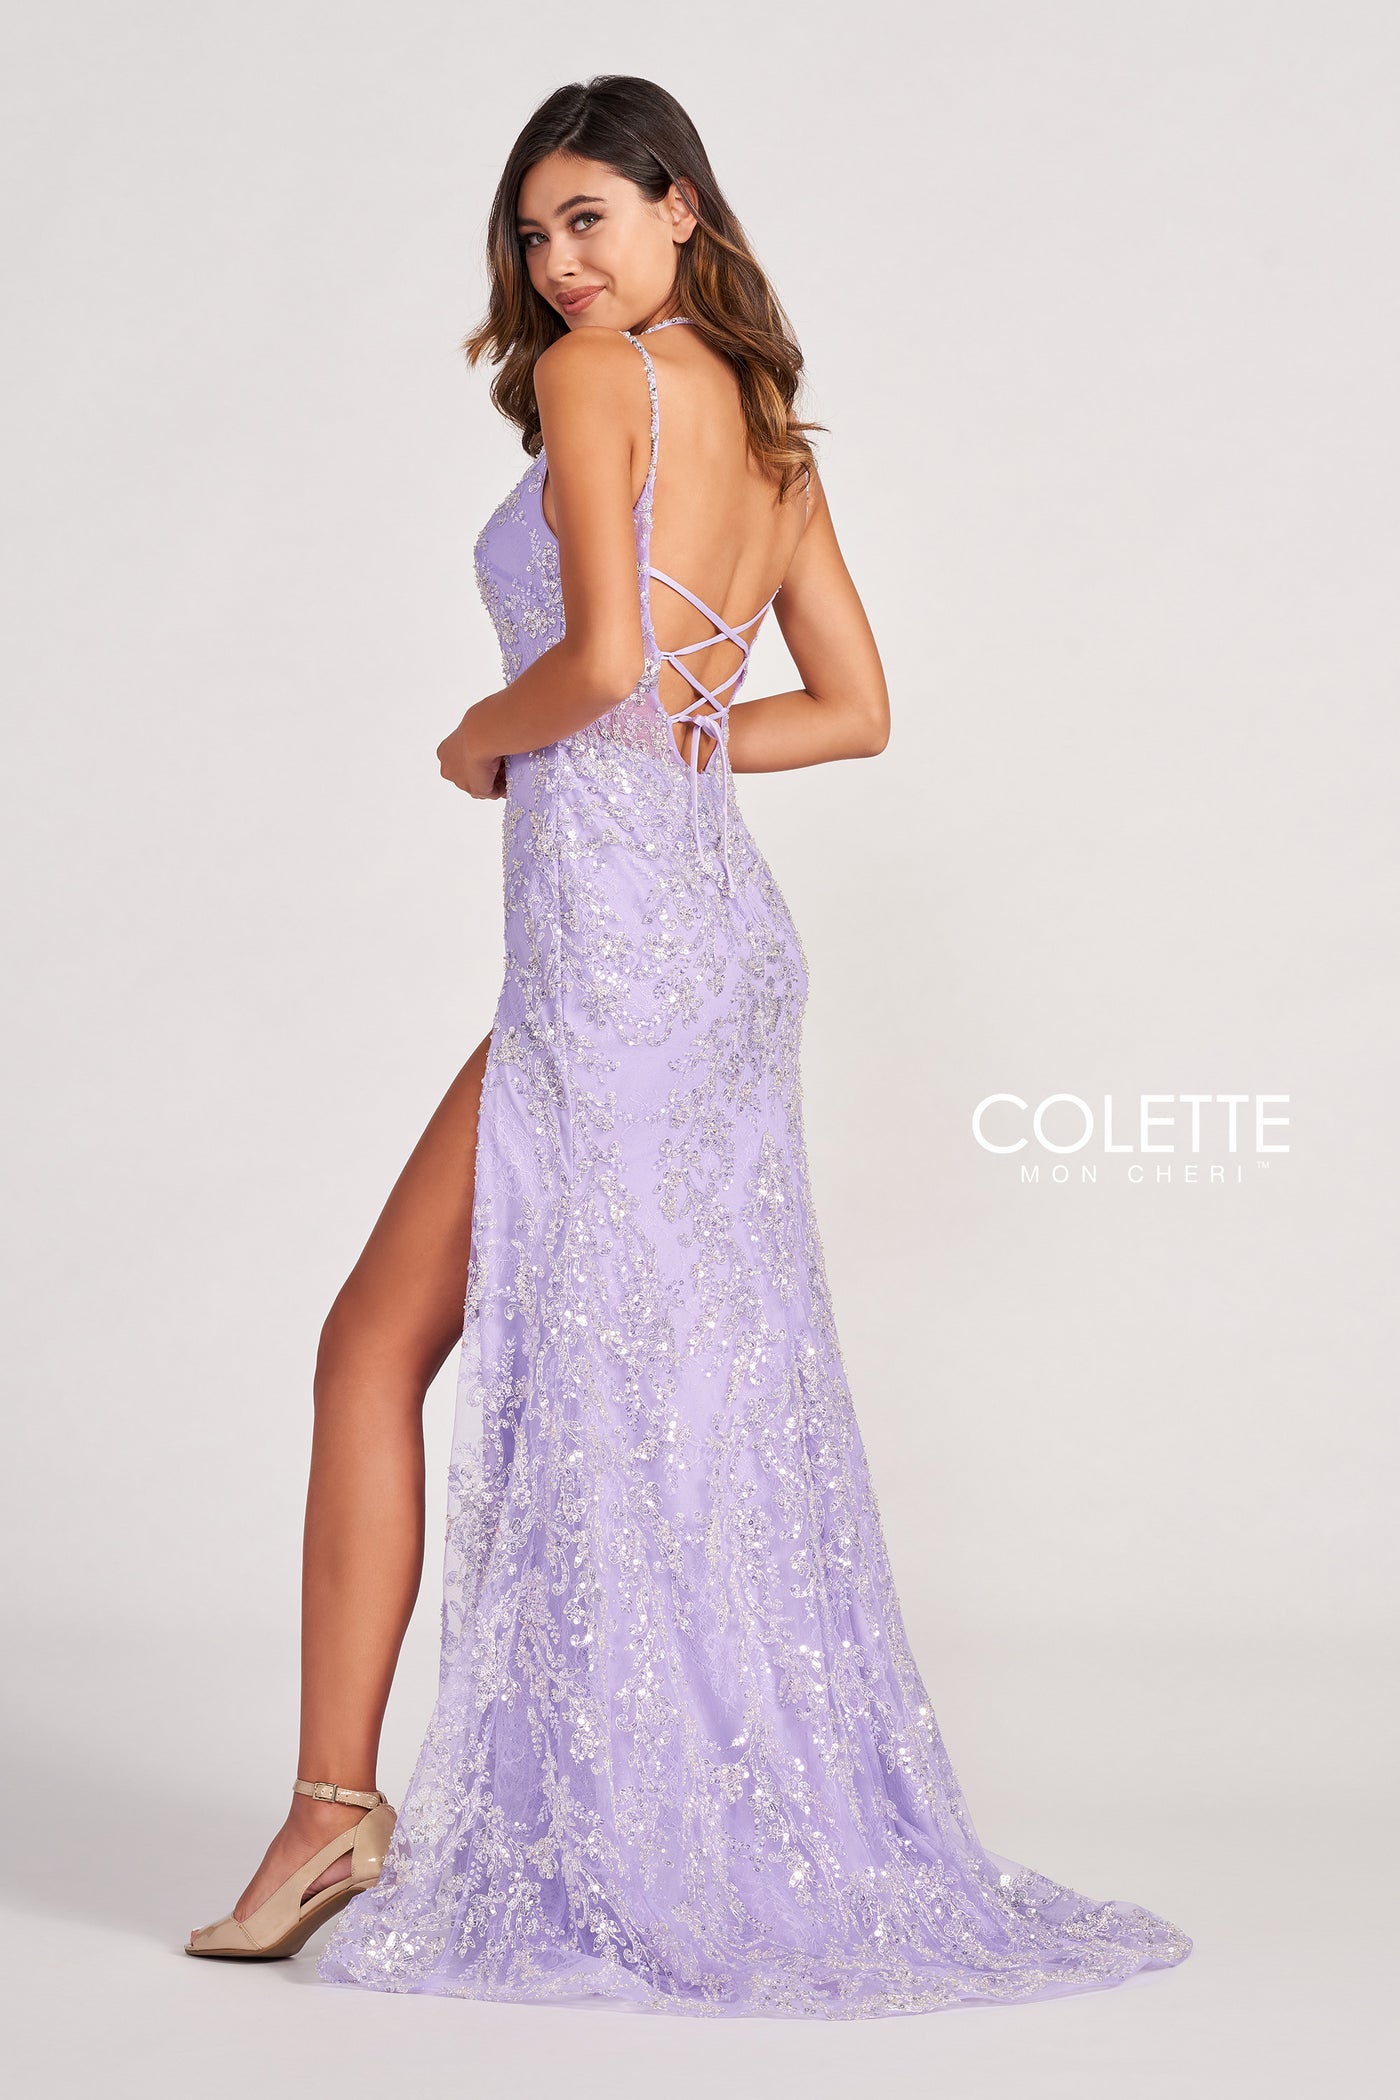 Colette CL2050 - Mydressline